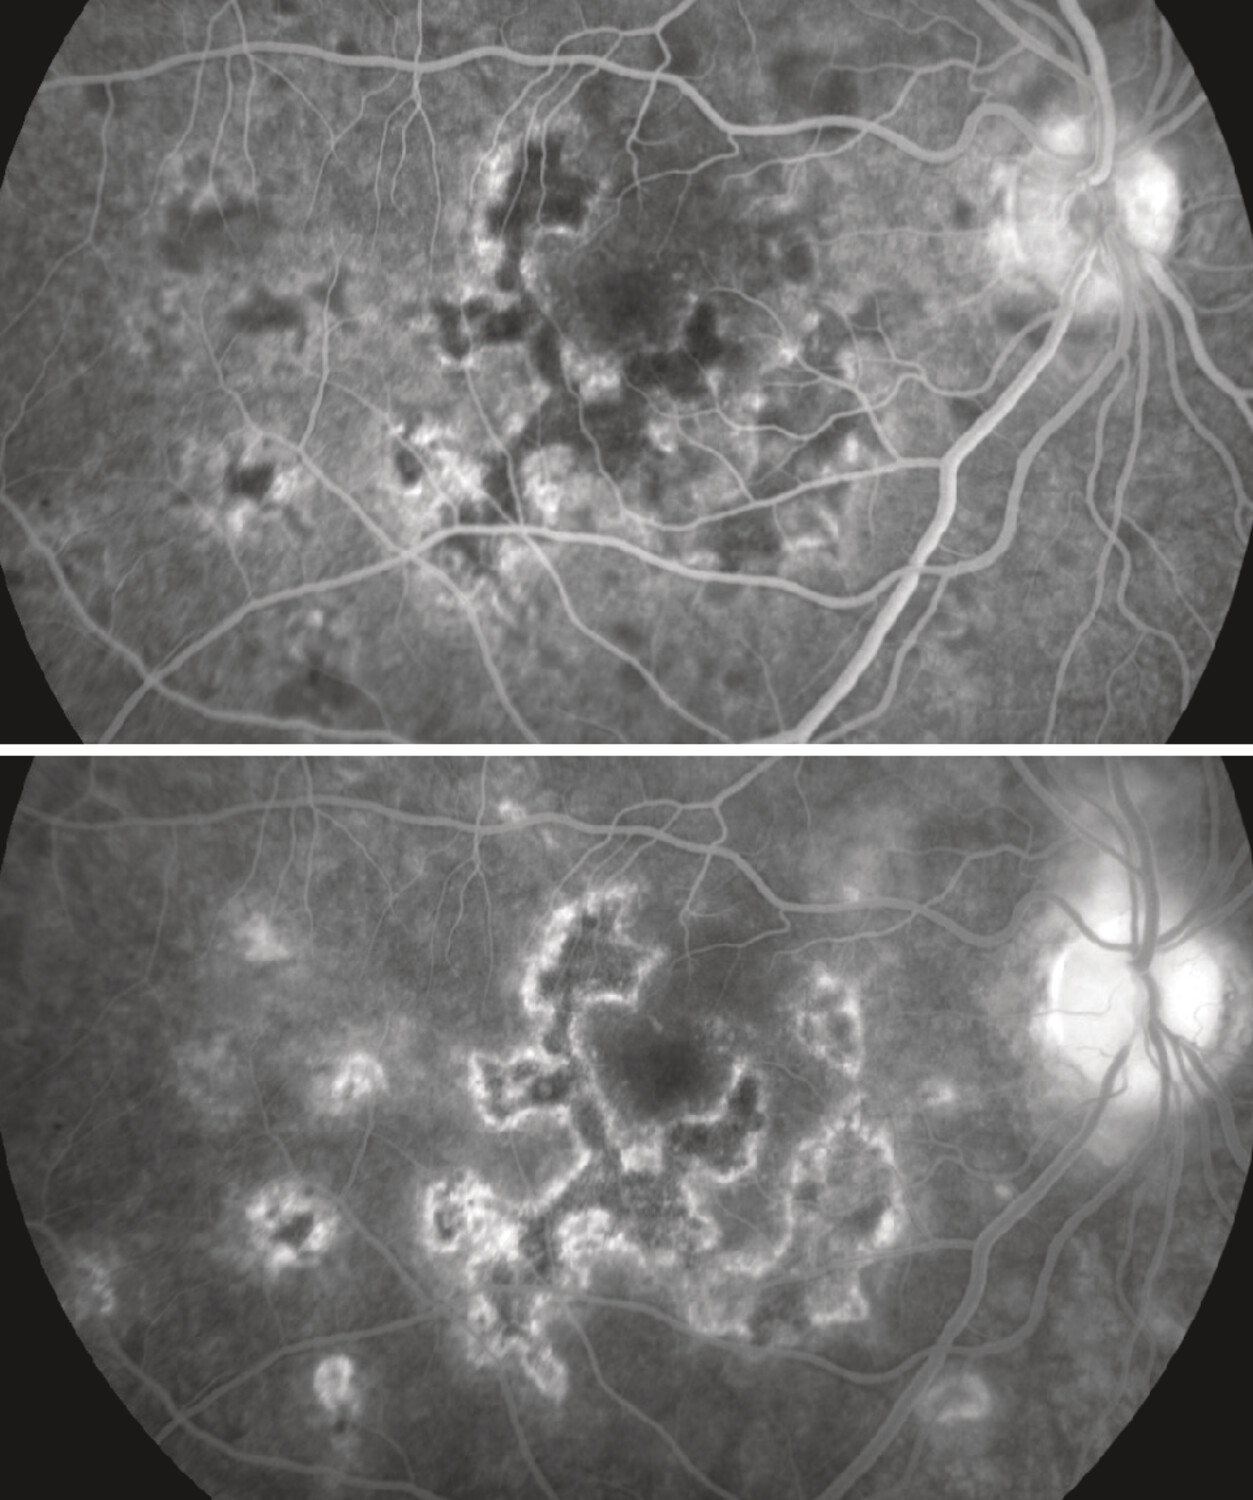 Intérêt de l’angiographie à la fluorescéine dans le diagnostic de taches blanches du fond d’œil - Figure 3